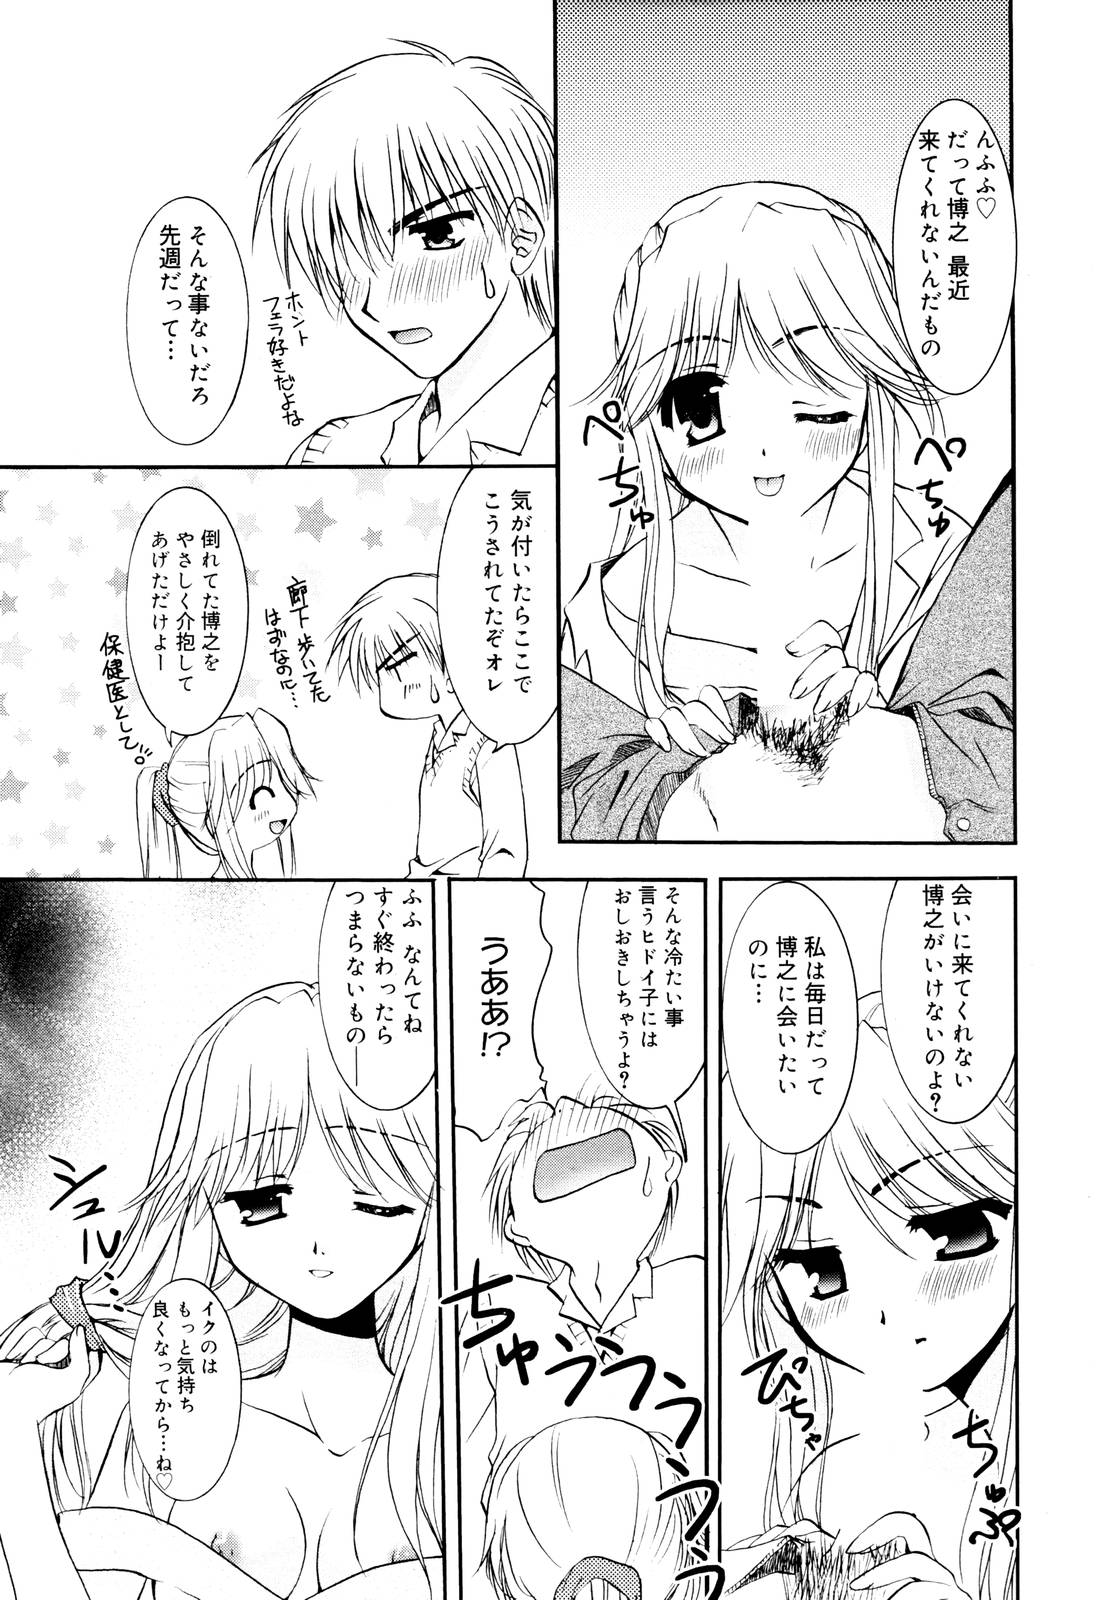 Manga Bangaichi 2006-01 page 29 full